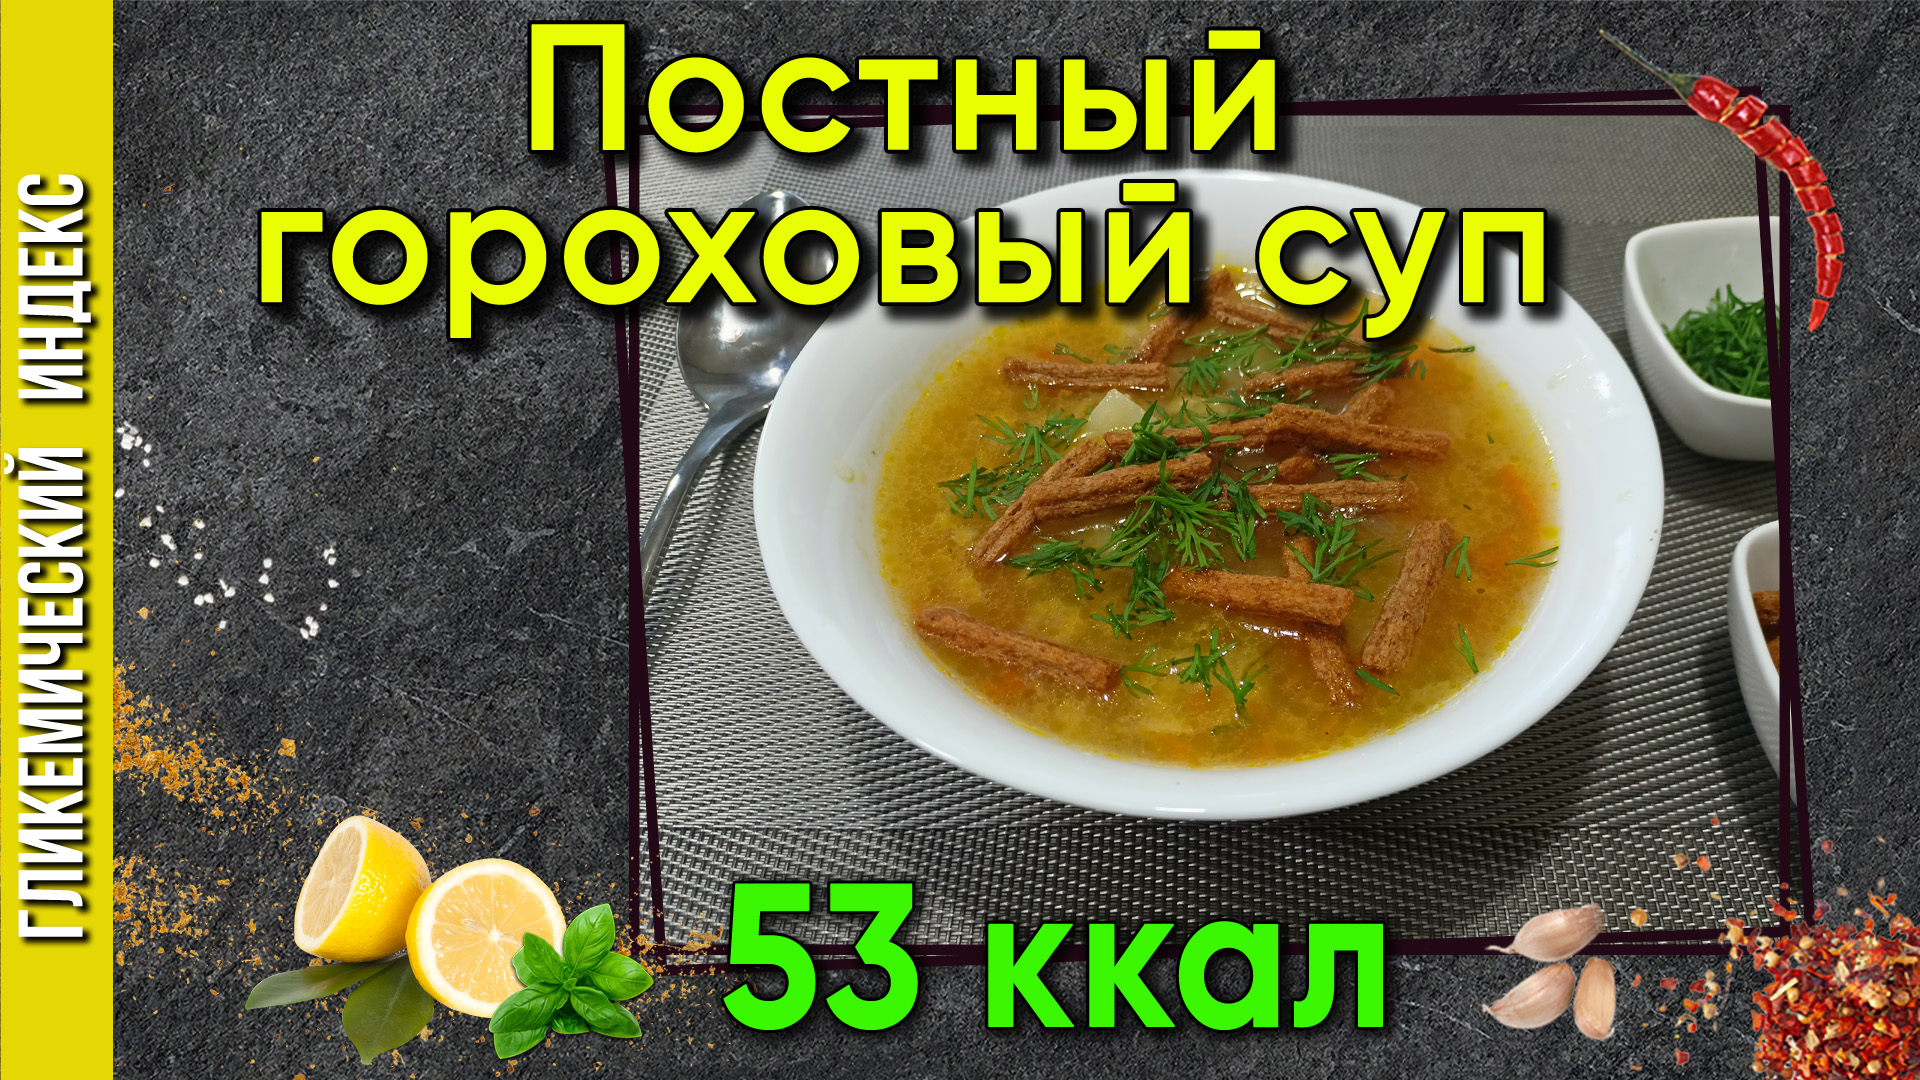 Постный гороховый суп — Пошаговый рецепт вкусного супа в мультиварке.